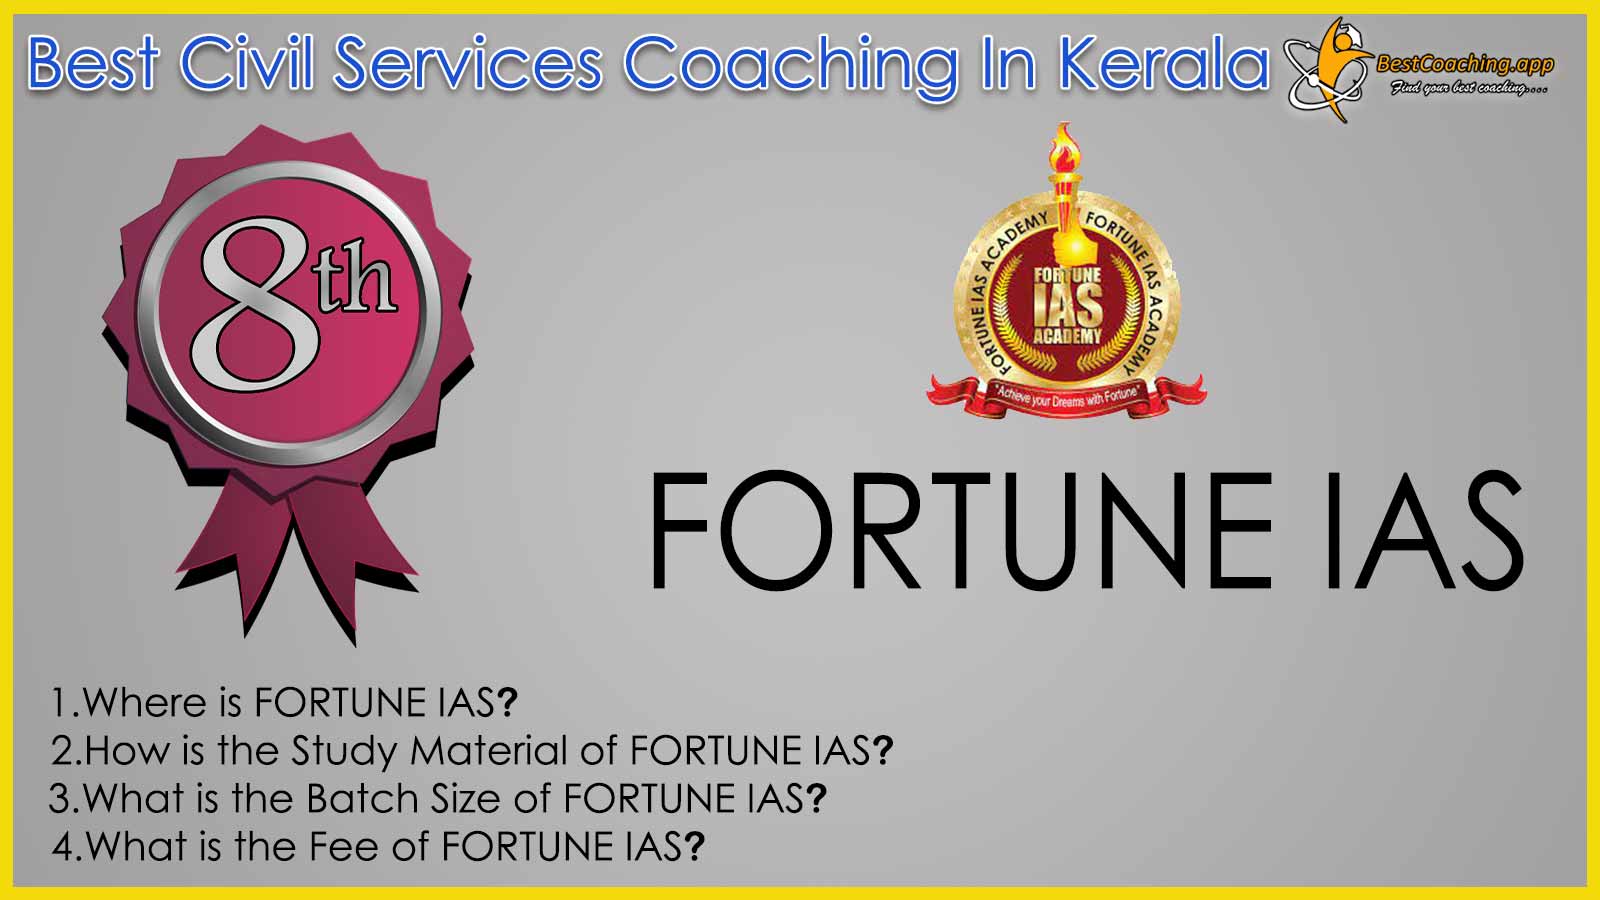 Fortune IAS Coaching